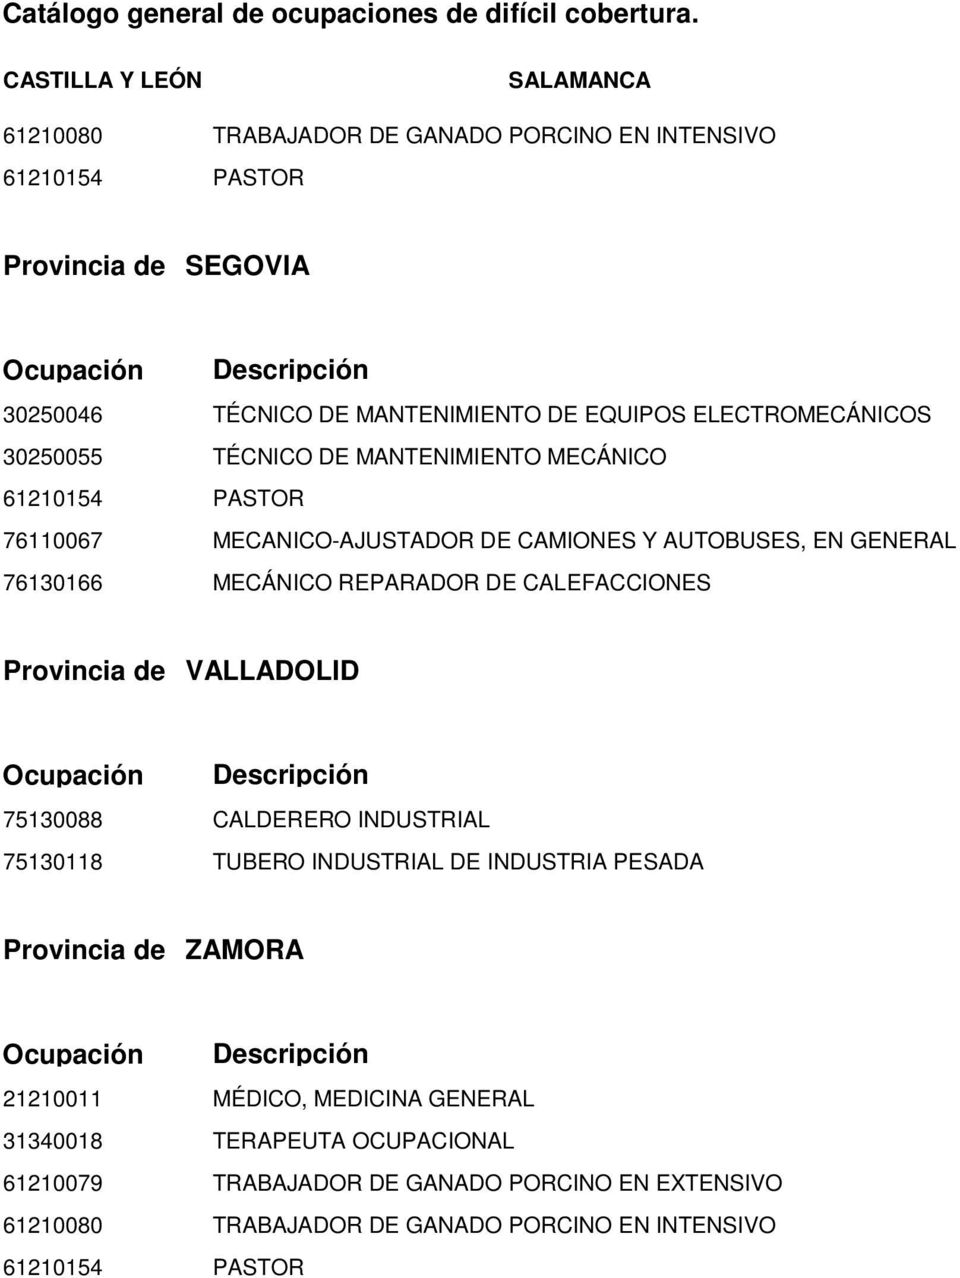 GENERAL 76130166 MECÁNICO REPARADOR DE CALEFACCIONES VALLADOLID 75130088 CALDERERO INDUSTRIAL 75130118 TUBERO INDUSTRIAL DE INDUSTRIA PESADA